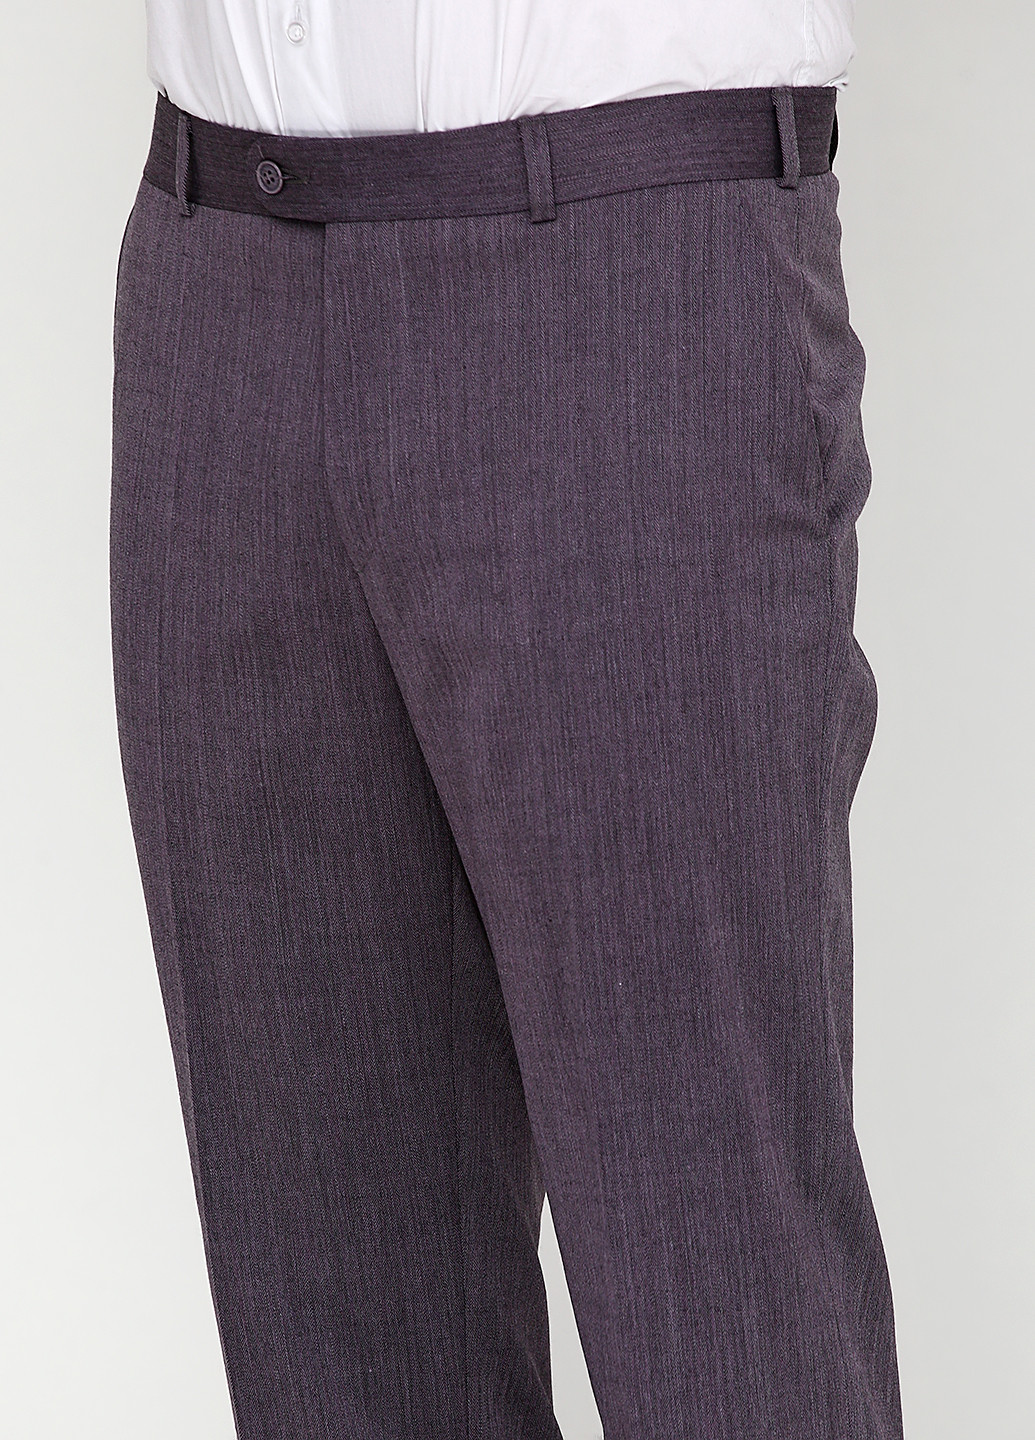 Светло-фиолетовый демисезонный костюм (пиджак, брюки) брючный Maestro Bravo